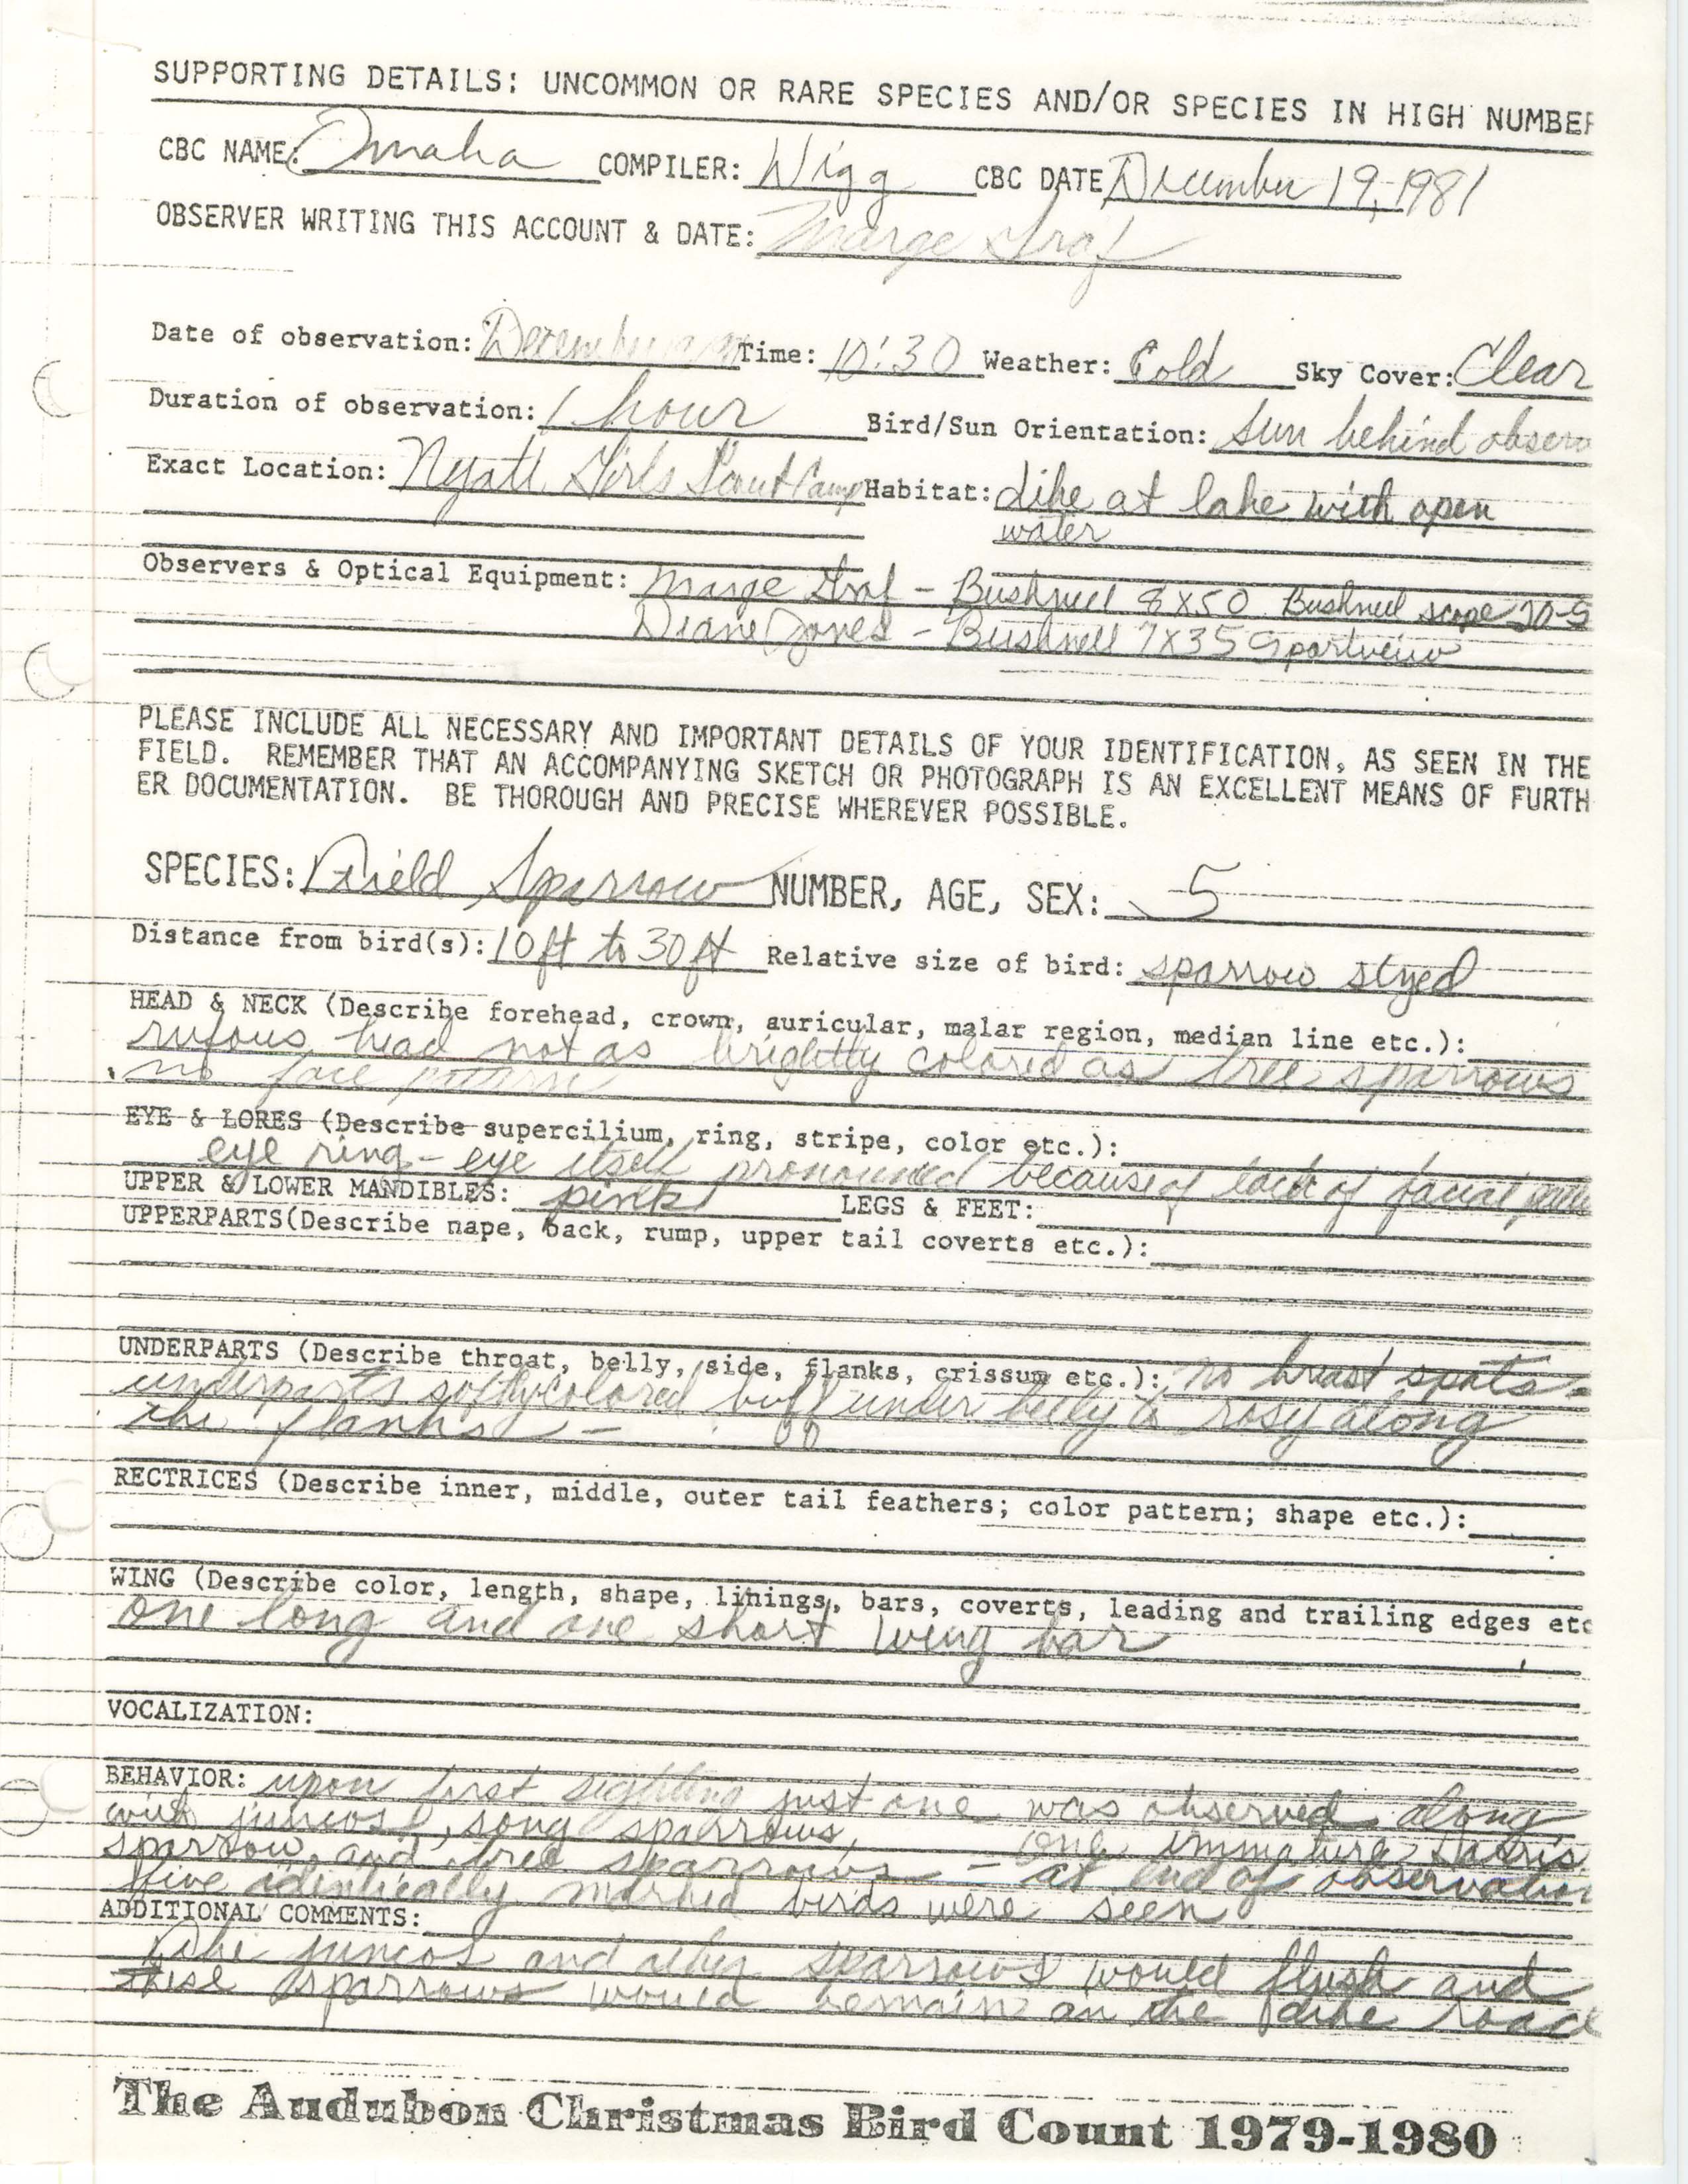 Rare bird documentation form for Field Sparrow at Nyatt Girls Scout Camp in Nebraska, 1981